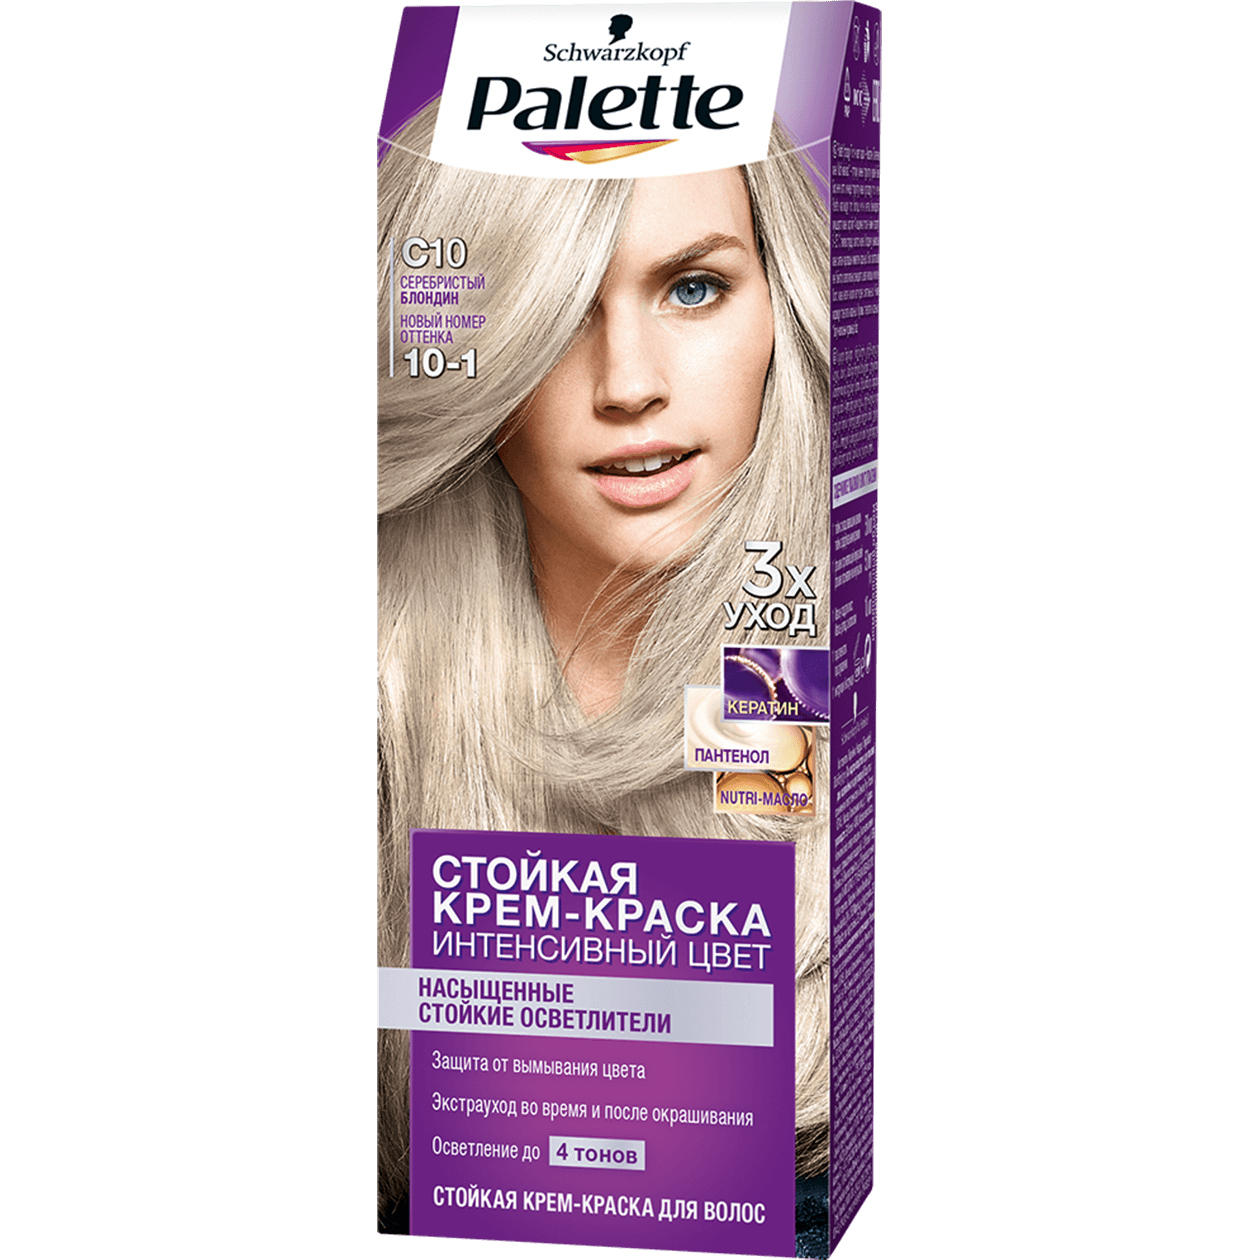 Крем-краска для волос Palette Интенсивный цвет 10-1, C10 Серебристый блондин 110 мл краска для волос loreal casting créme gloss без аммиака оттенок 618 ванильный мокко